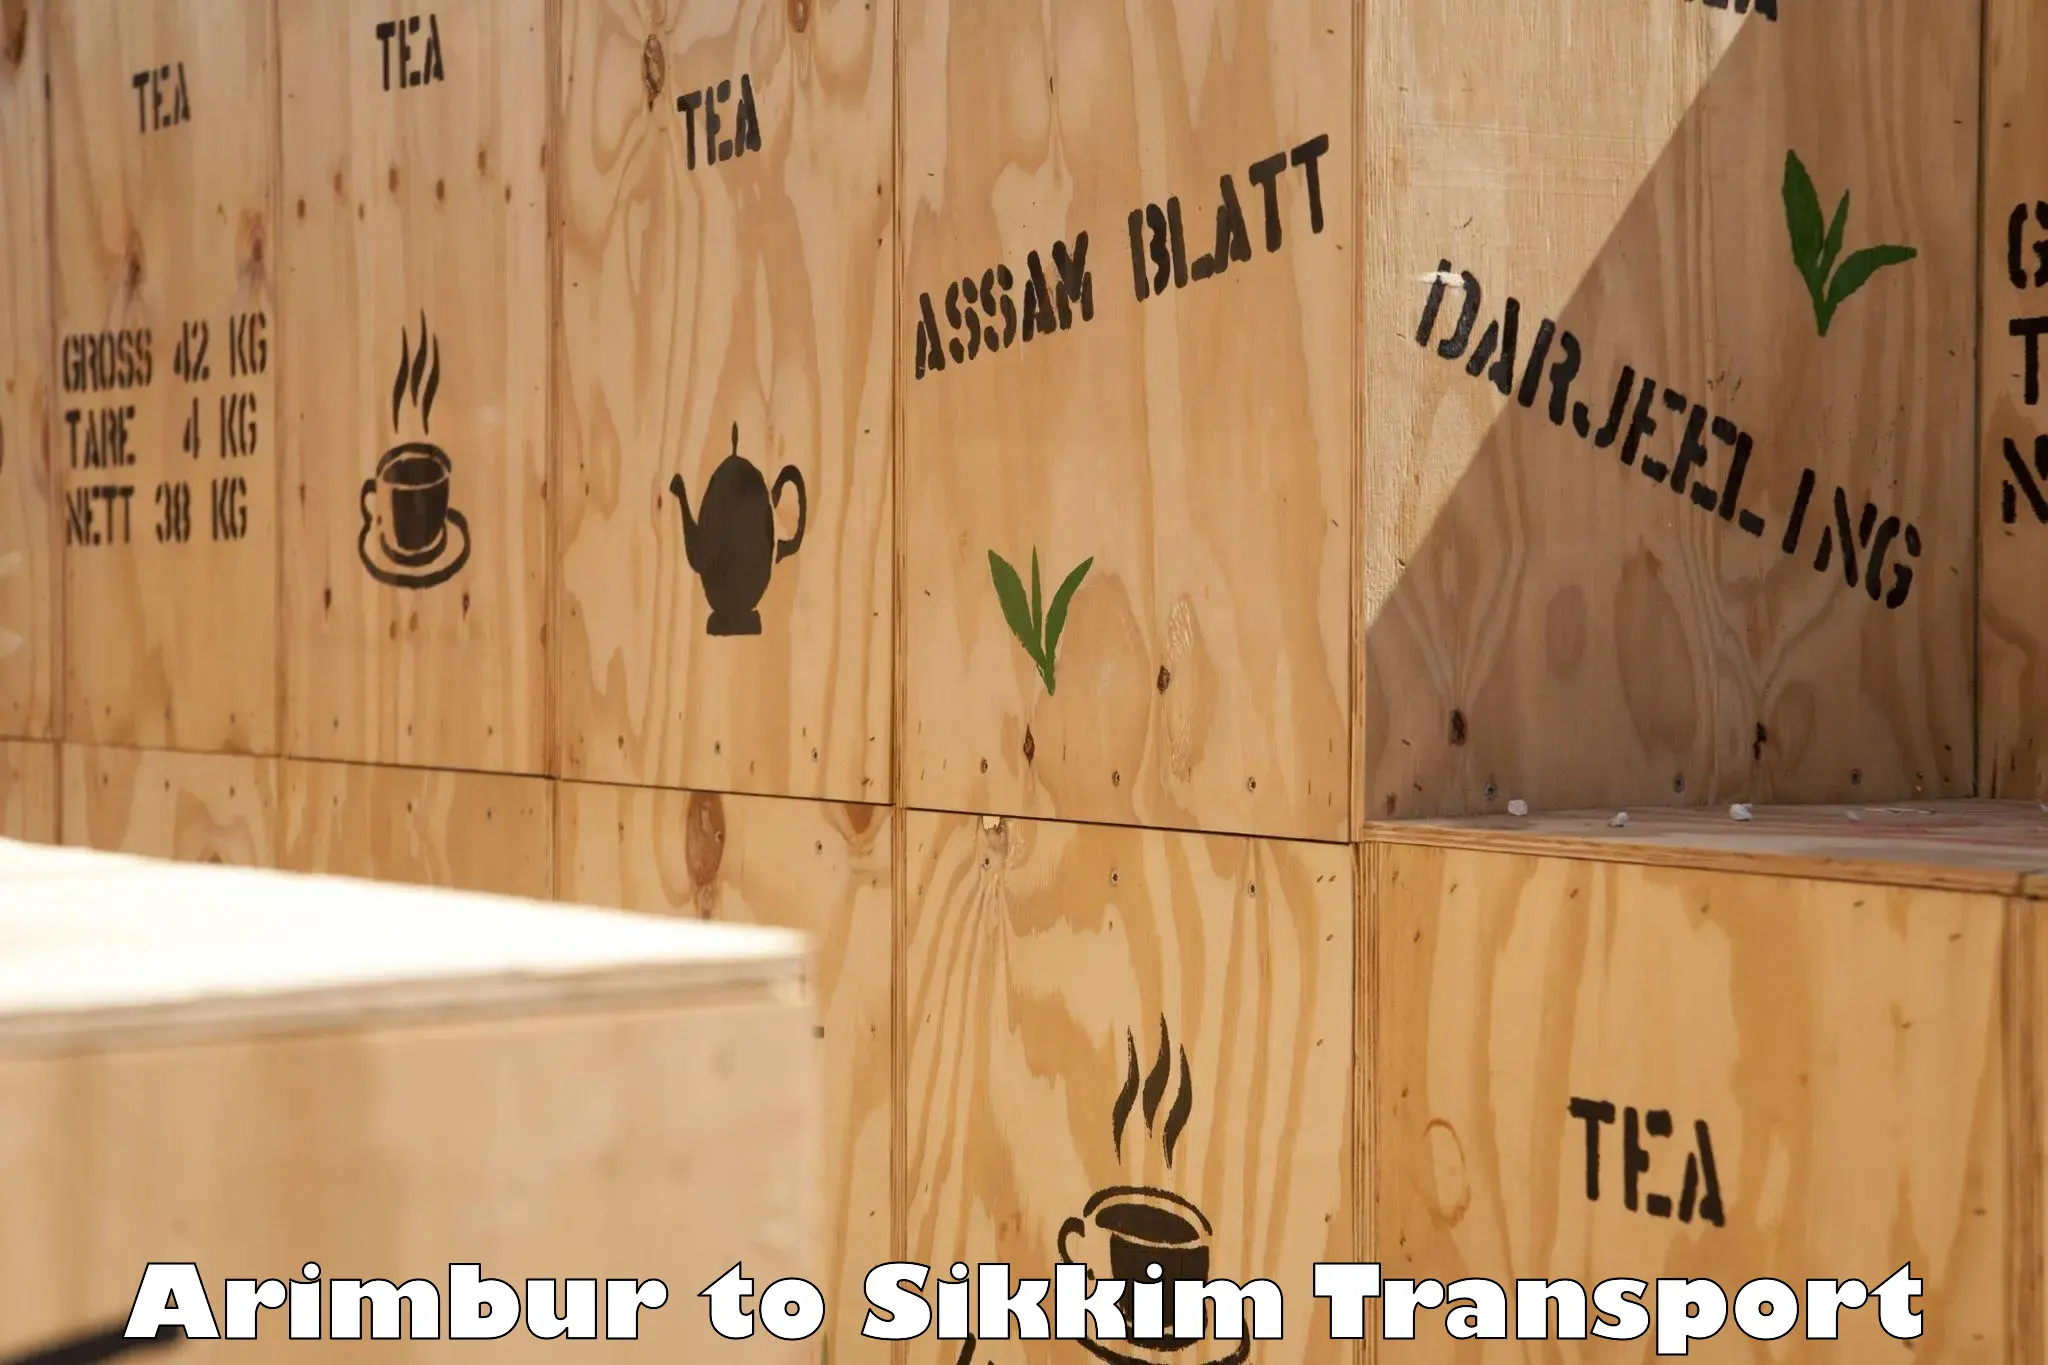 Container transport service Arimbur to Sikkim